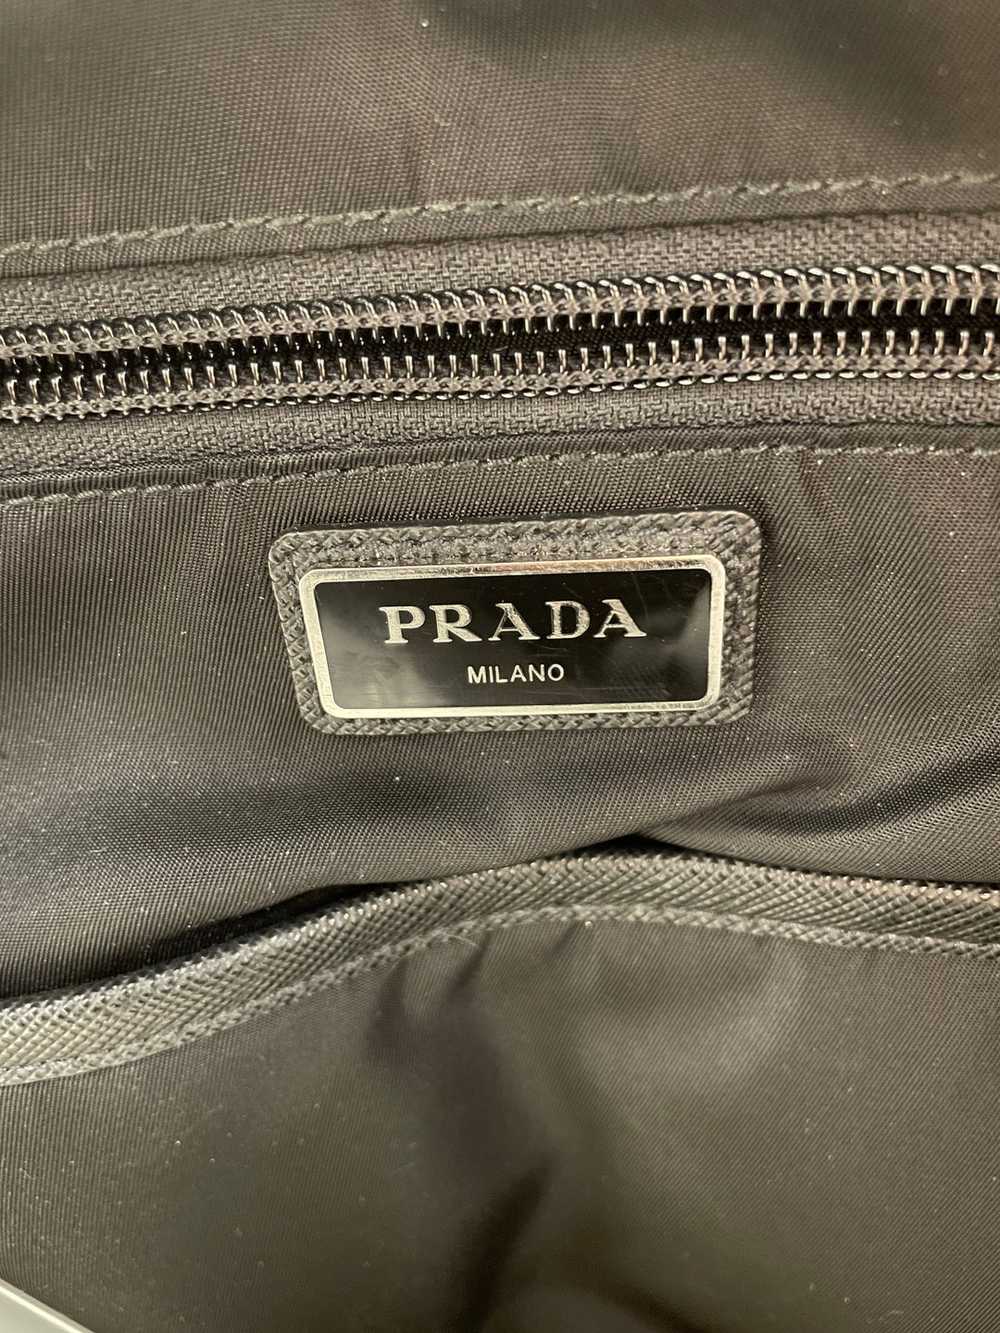 PRADA/Backpack/Nylon/BLK/nylon back pack - image 4